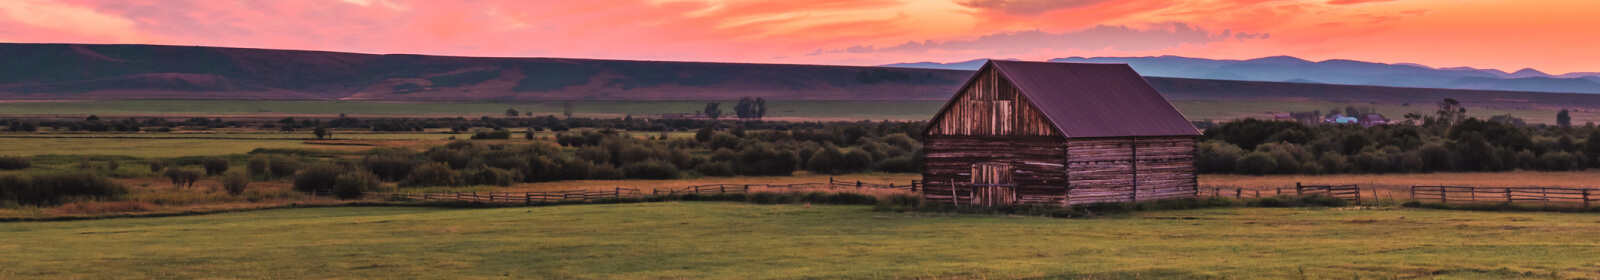 Landscape of a barn in a field